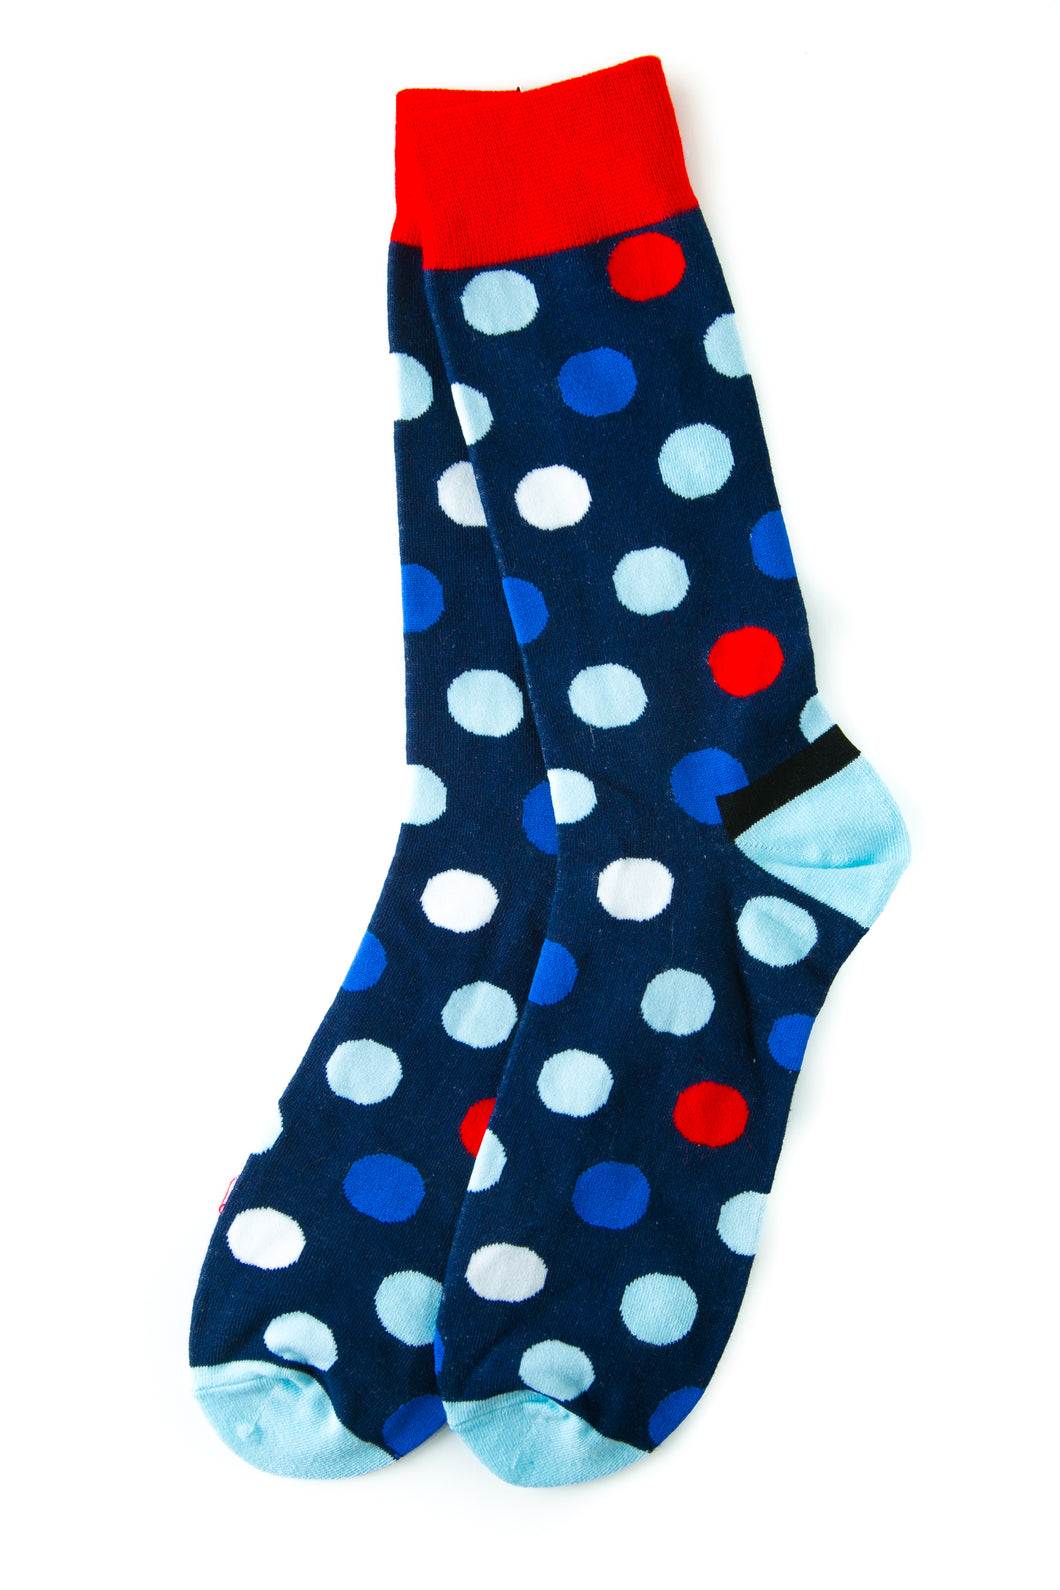 blue polkadot socks